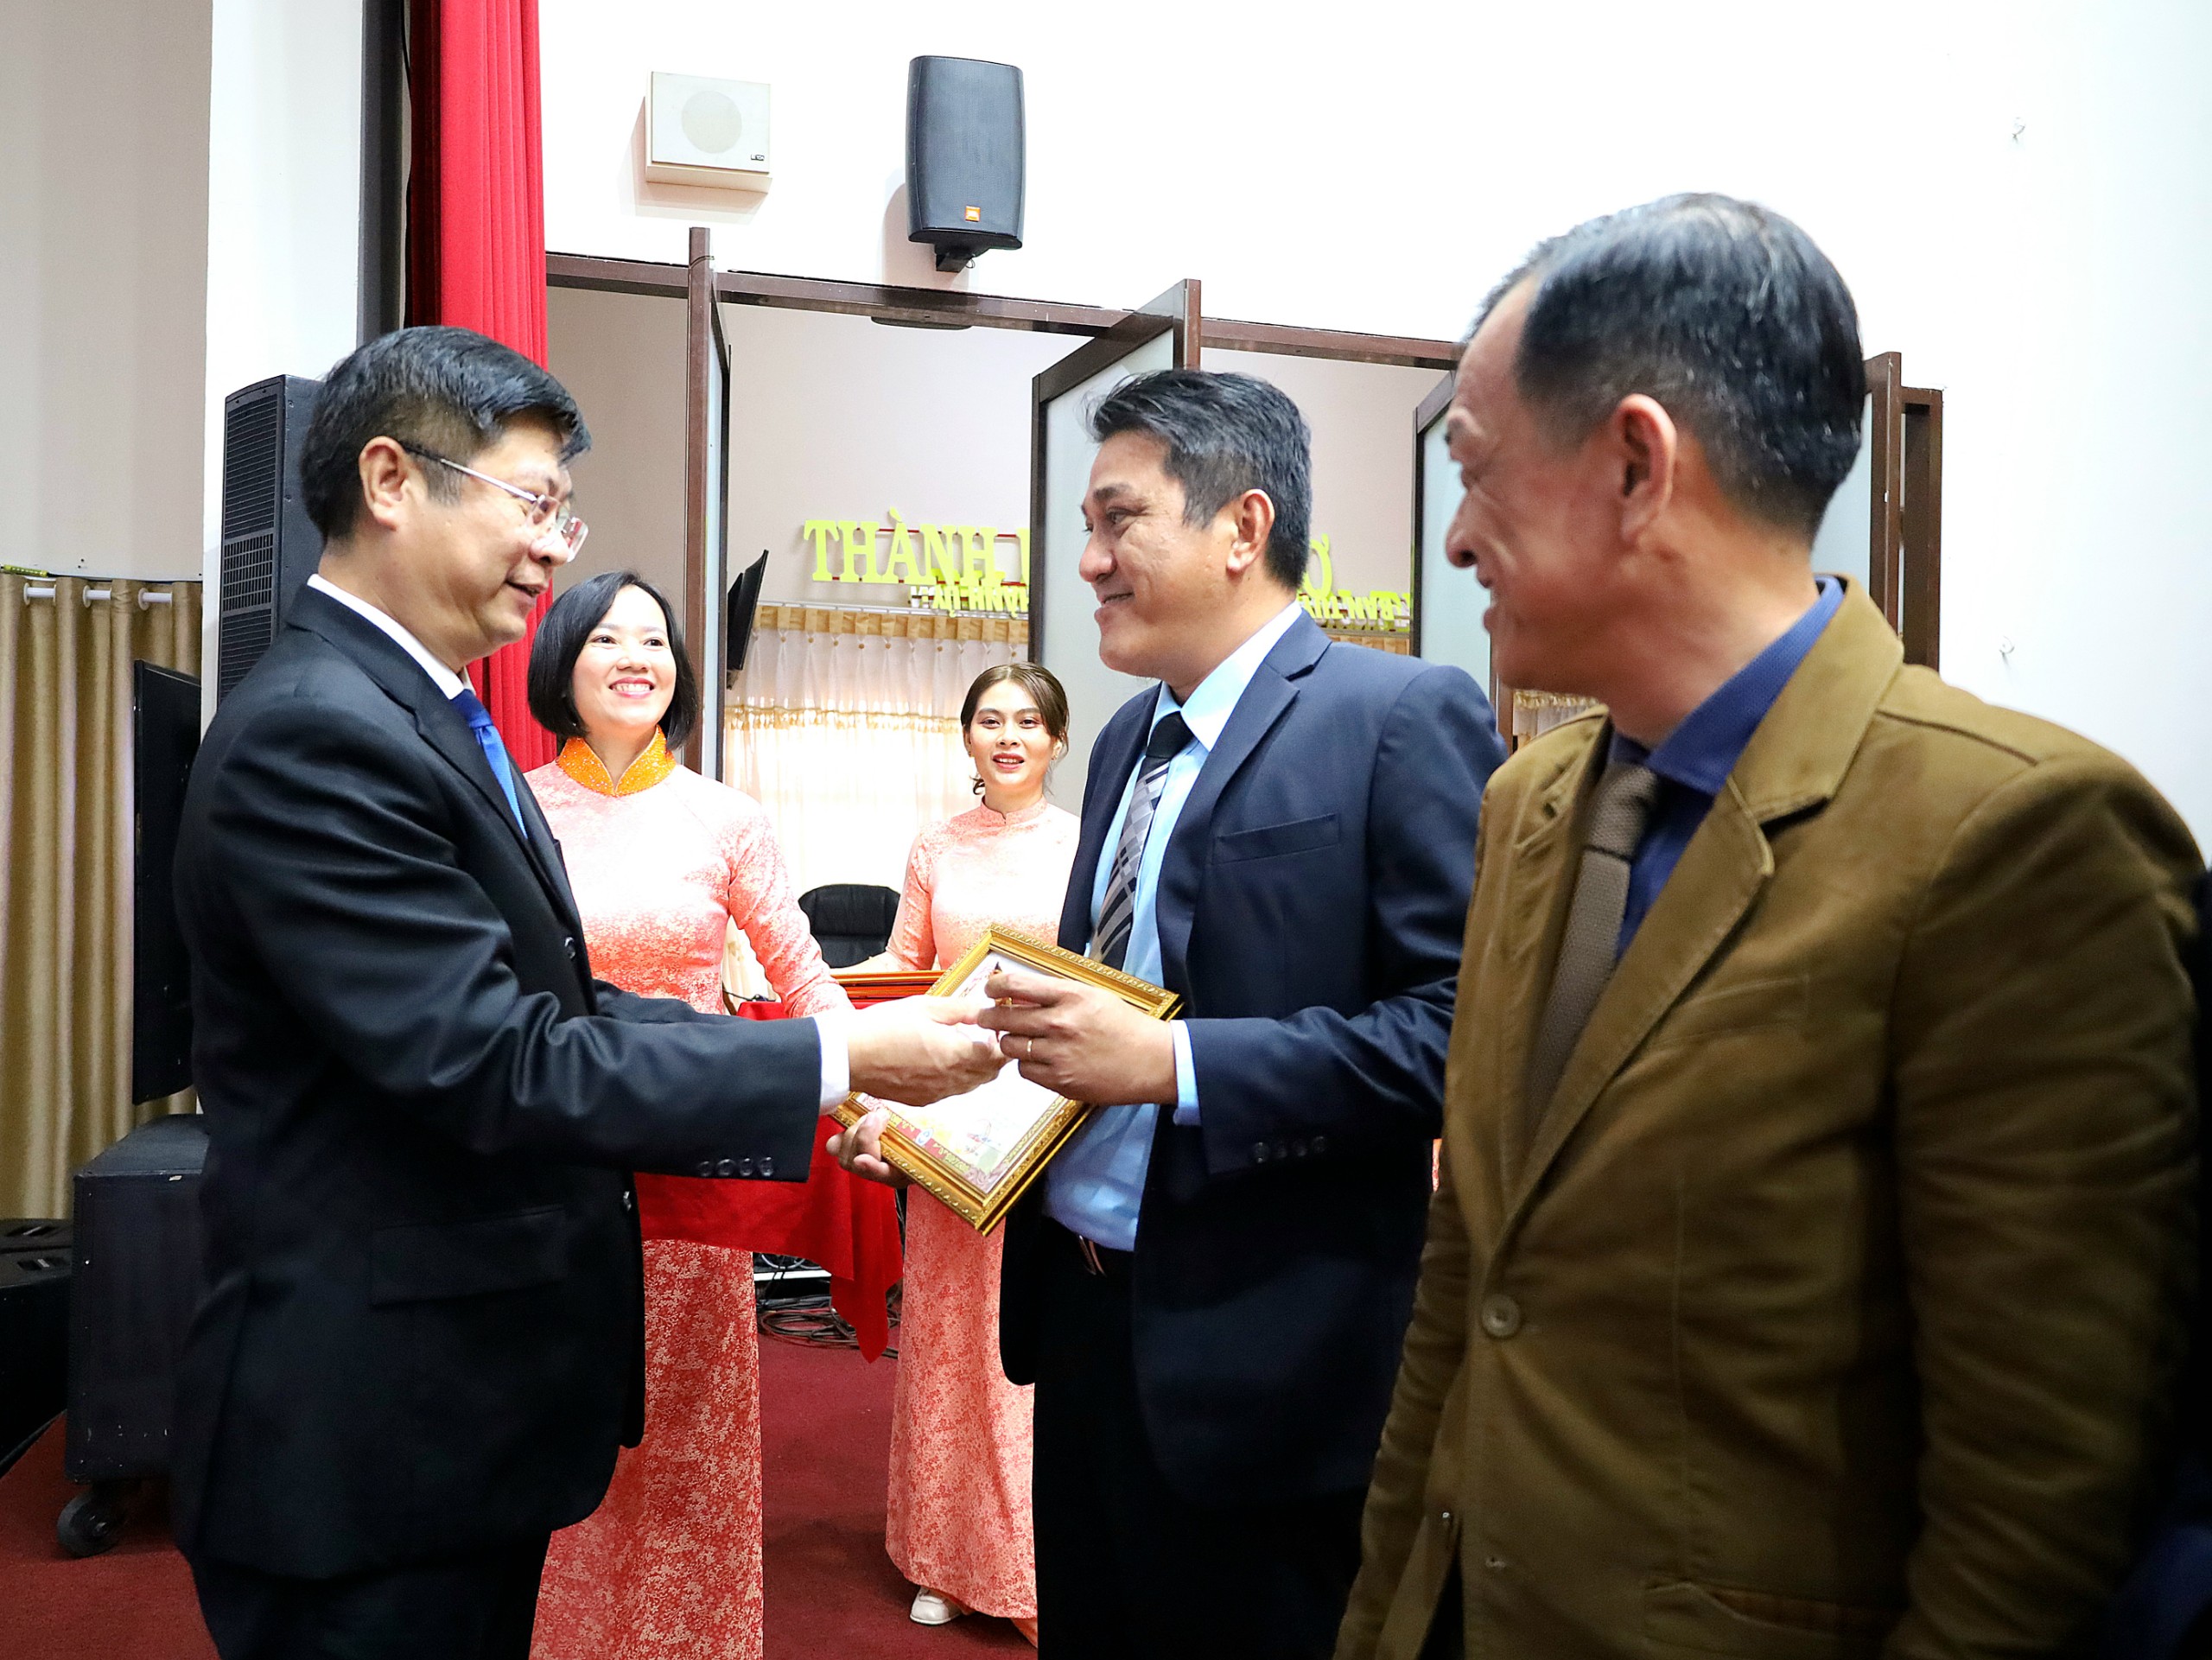 Ông Trương Quang Hoài Nam - Phó trưởng Ban Đối ngoại Trung ương trao tặng Kỷ niệm chương “Vì hòa bình, hữu nghị giữa các dân tộc” cho các cá nhân.